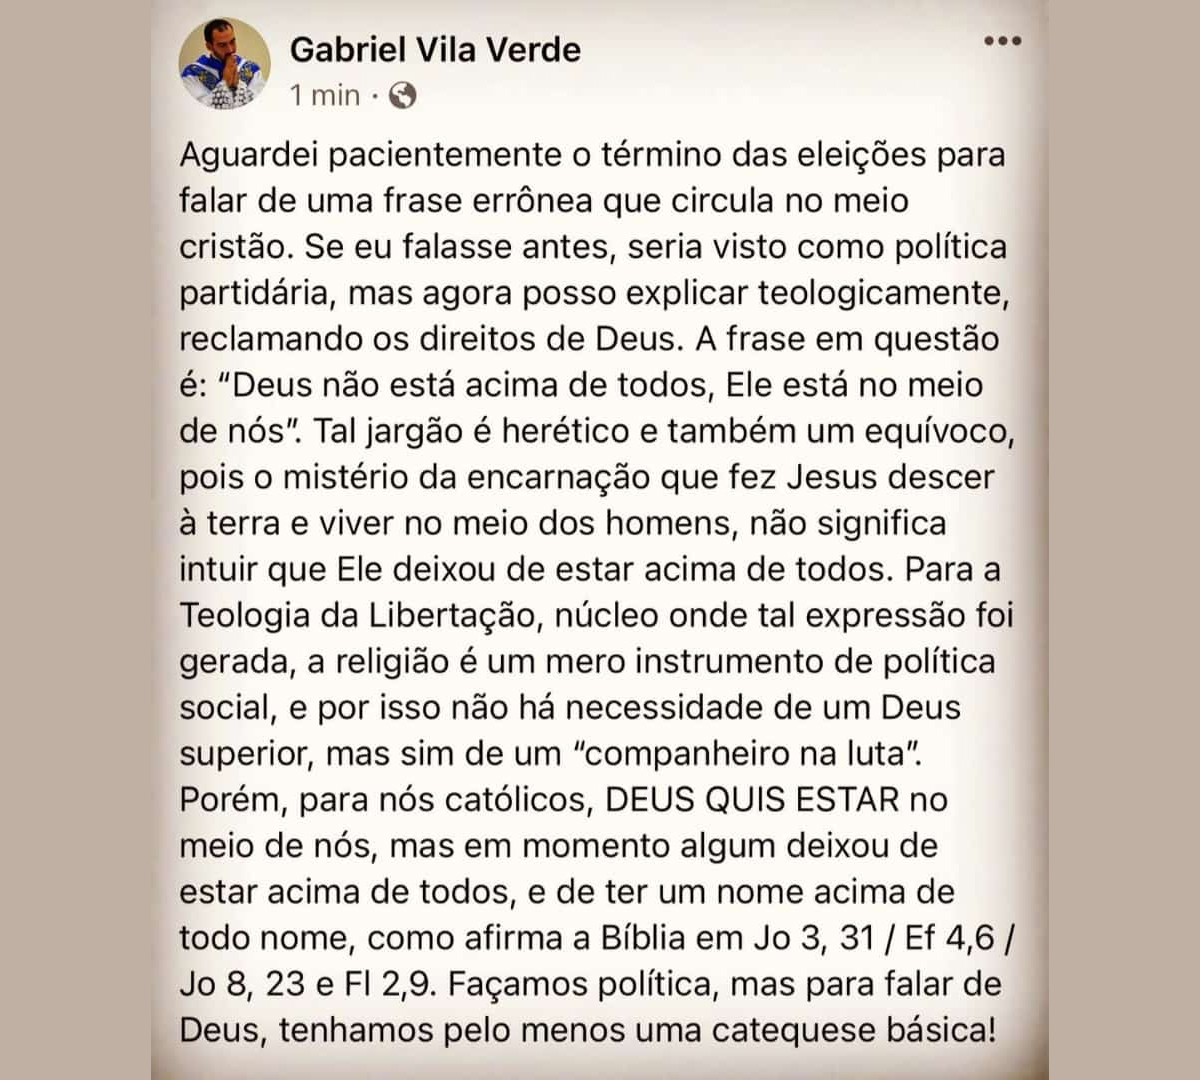 Padre Gabriel Vila Verde sobre a Teologia da Libertação 